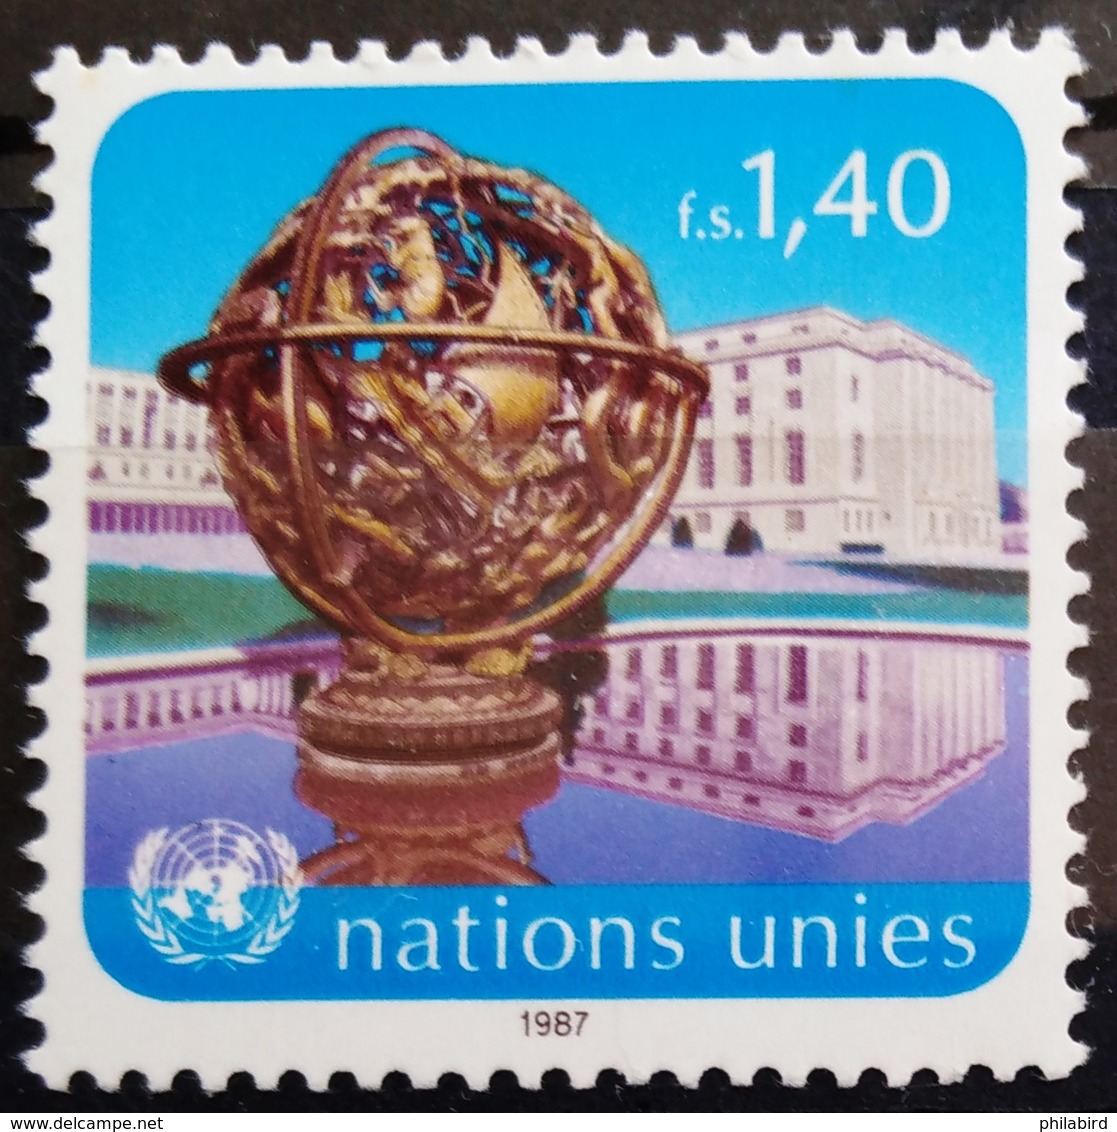 NATIONS-UNIS  GENEVE                  N° 153                      NEUF** - Nuovi